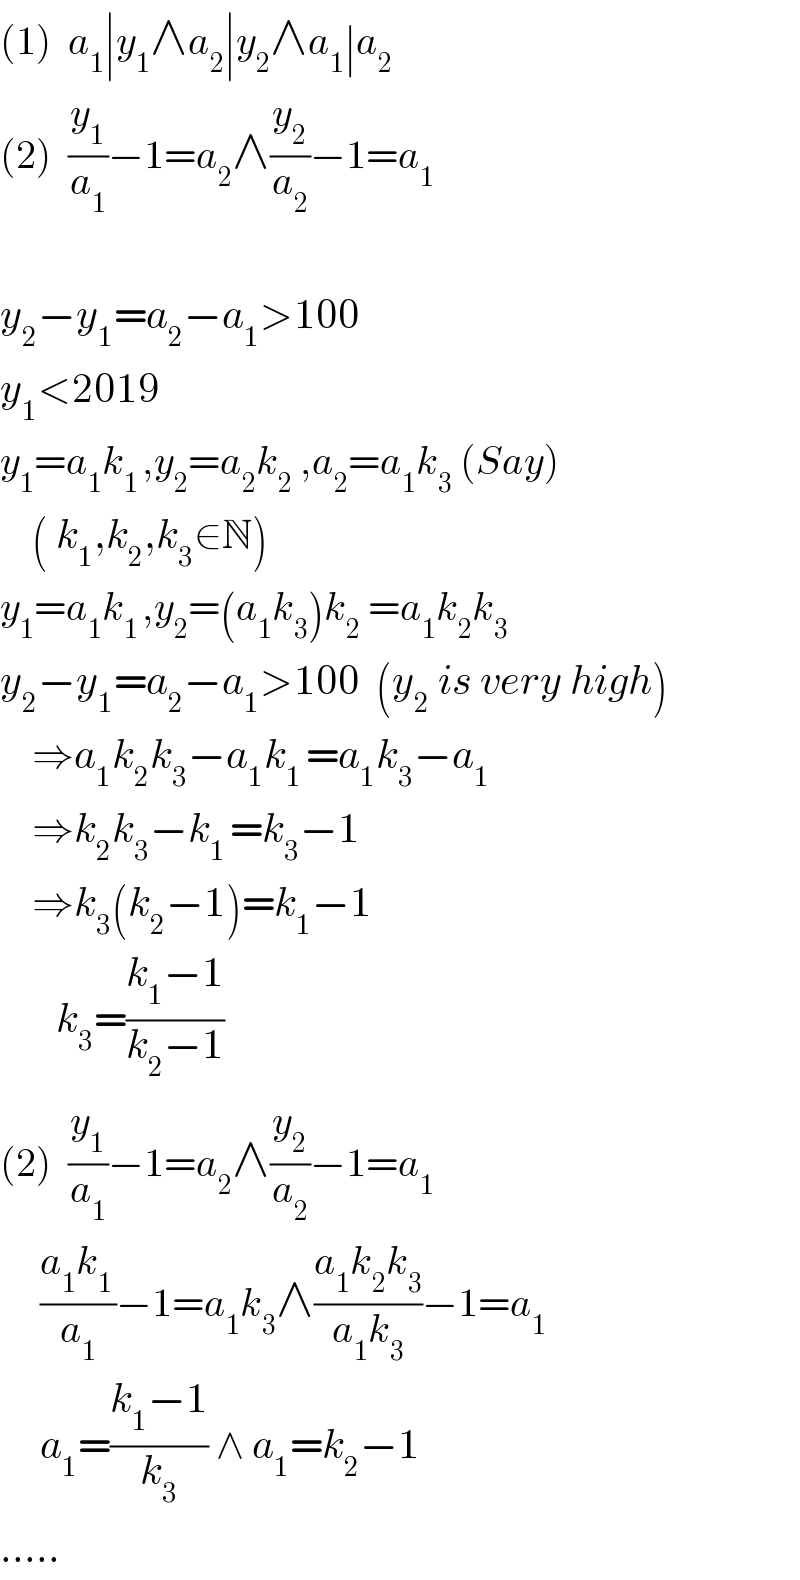 (1)  a_1 ∣y_1 ∧a_2 ∣y_2 ∧a_1 ∣a_2   (2)  (y_1 /a_1 )−1=a_2 ∧(y_2 /a_2 )−1=a_1     y_2 −y_1 =a_2 −a_1 >100  y_1 <2019  y_1 =a_1 k_(1 ) ,y_2 =a_2 k_2  ,a_2 =a_1 k_3  (Say)      ( k_1 ,k_2 ,k_3 ∈N)  y_1 =a_1 k_(1 ) ,y_2 =(a_1 k_3 )k_2  =a_1 k_2 k_3   y_2 −y_1 =a_2 −a_1 >100  (y_2  is very high)      ⇒a_1 k_2 k_3 −a_1 k_(1 ) =a_1 k_3 −a_1       ⇒k_2 k_3 −k_(1 ) =k_3 −1      ⇒k_3 (k_2 −1)=k_1 −1         k_3 =((k_1 −1)/(k_2 −1))  (2)  (y_1 /a_1 )−1=a_2 ∧(y_2 /a_2 )−1=a_1        ((a_1 k_(1 ) )/a_1 )−1=a_1 k_3 ∧((a_1 k_2 k_3 )/(a_1 k_3 ))−1=a_1        a_1 =((k_1 −1)/k_3 ) ∧ a_1 =k_2 −1  .....  